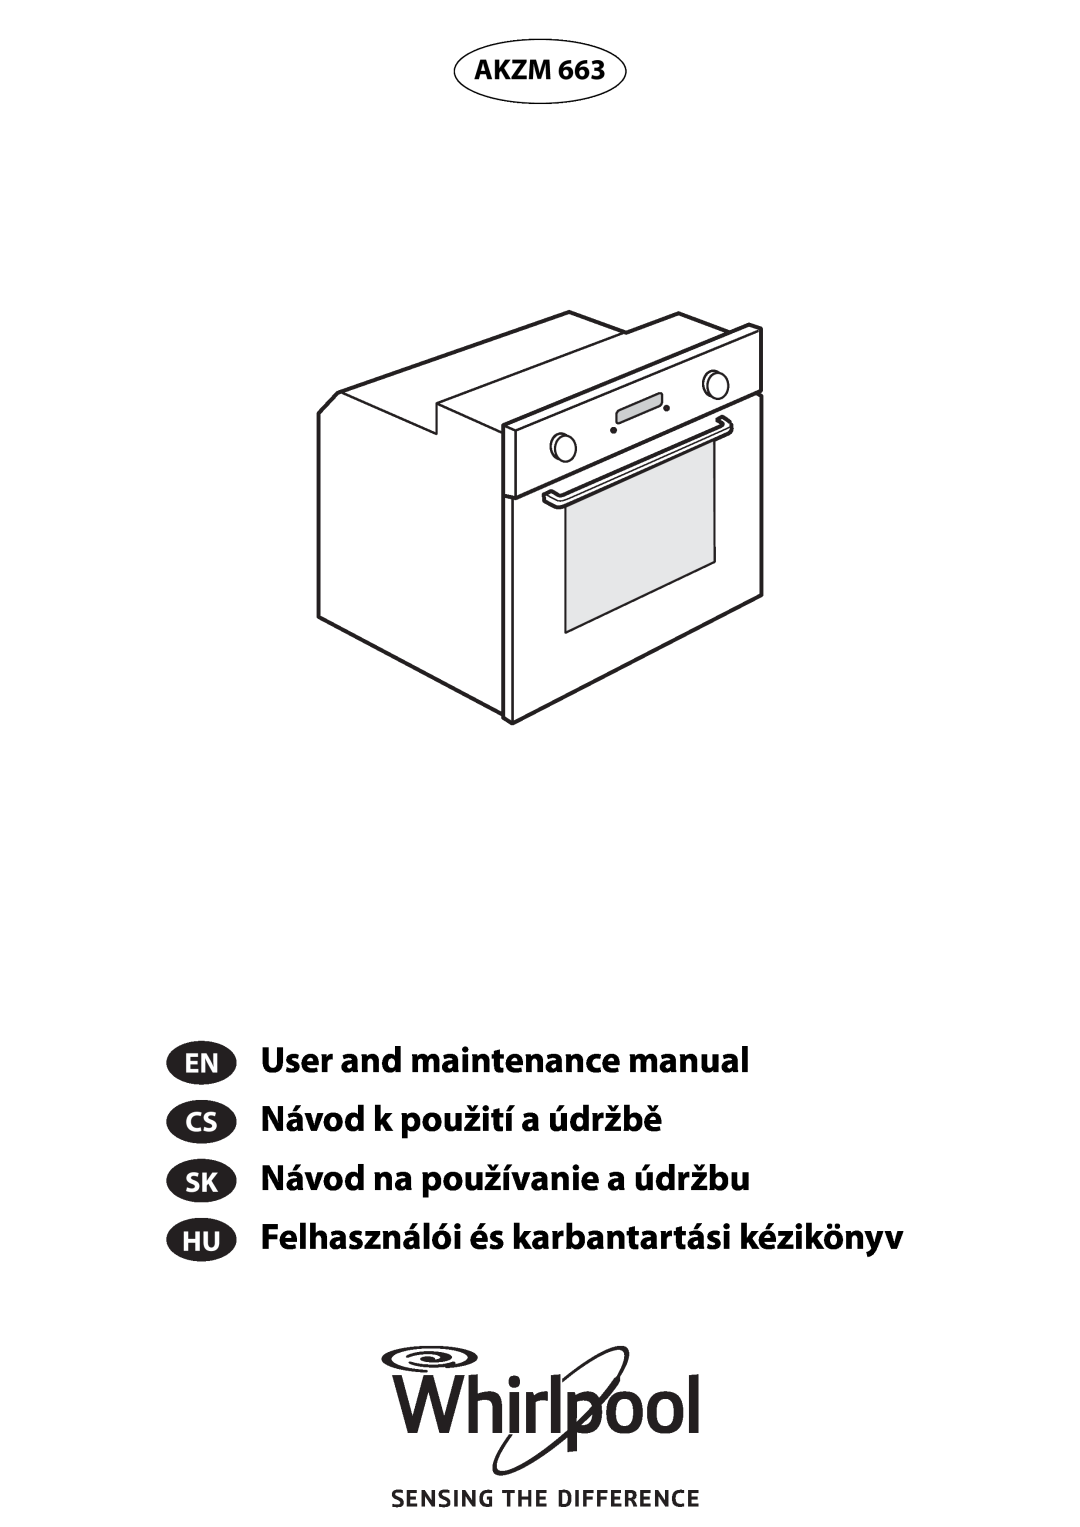 Whirlpool AKZM 663 manual Felhasználói és karbantartási kézikönyv, Akzm 